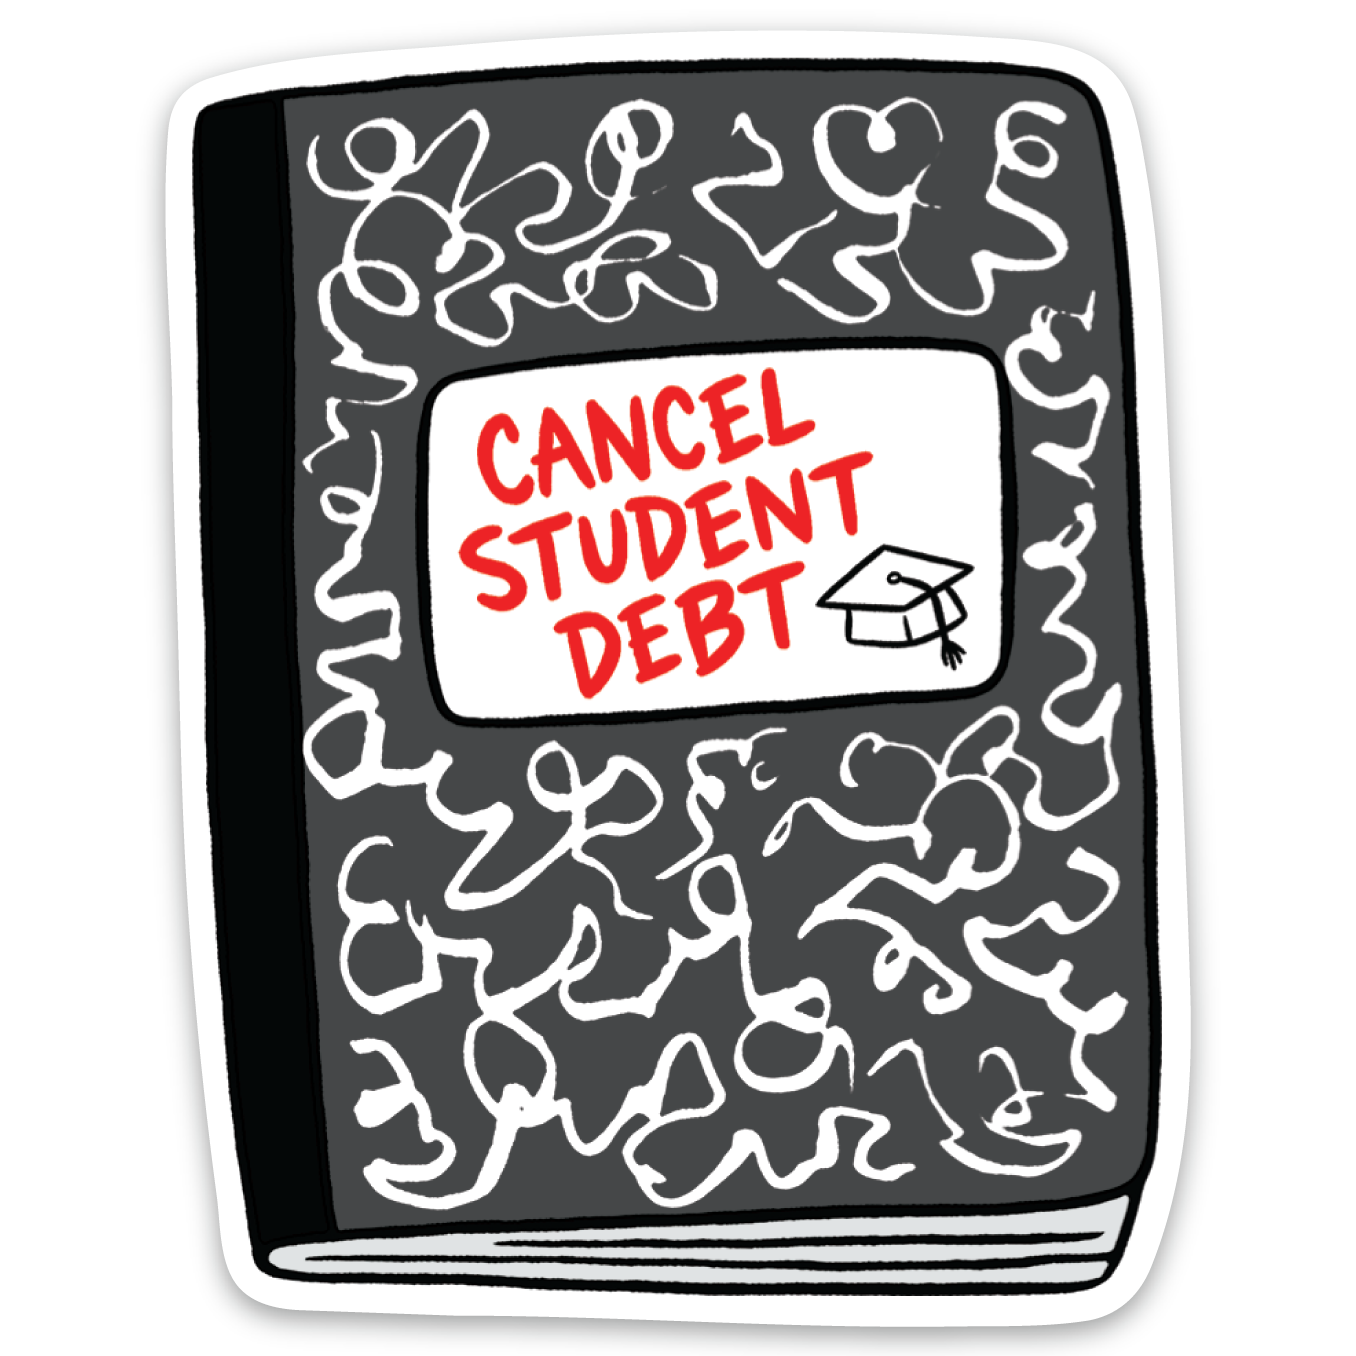 Cancel Student Debt Die Cut Sticker